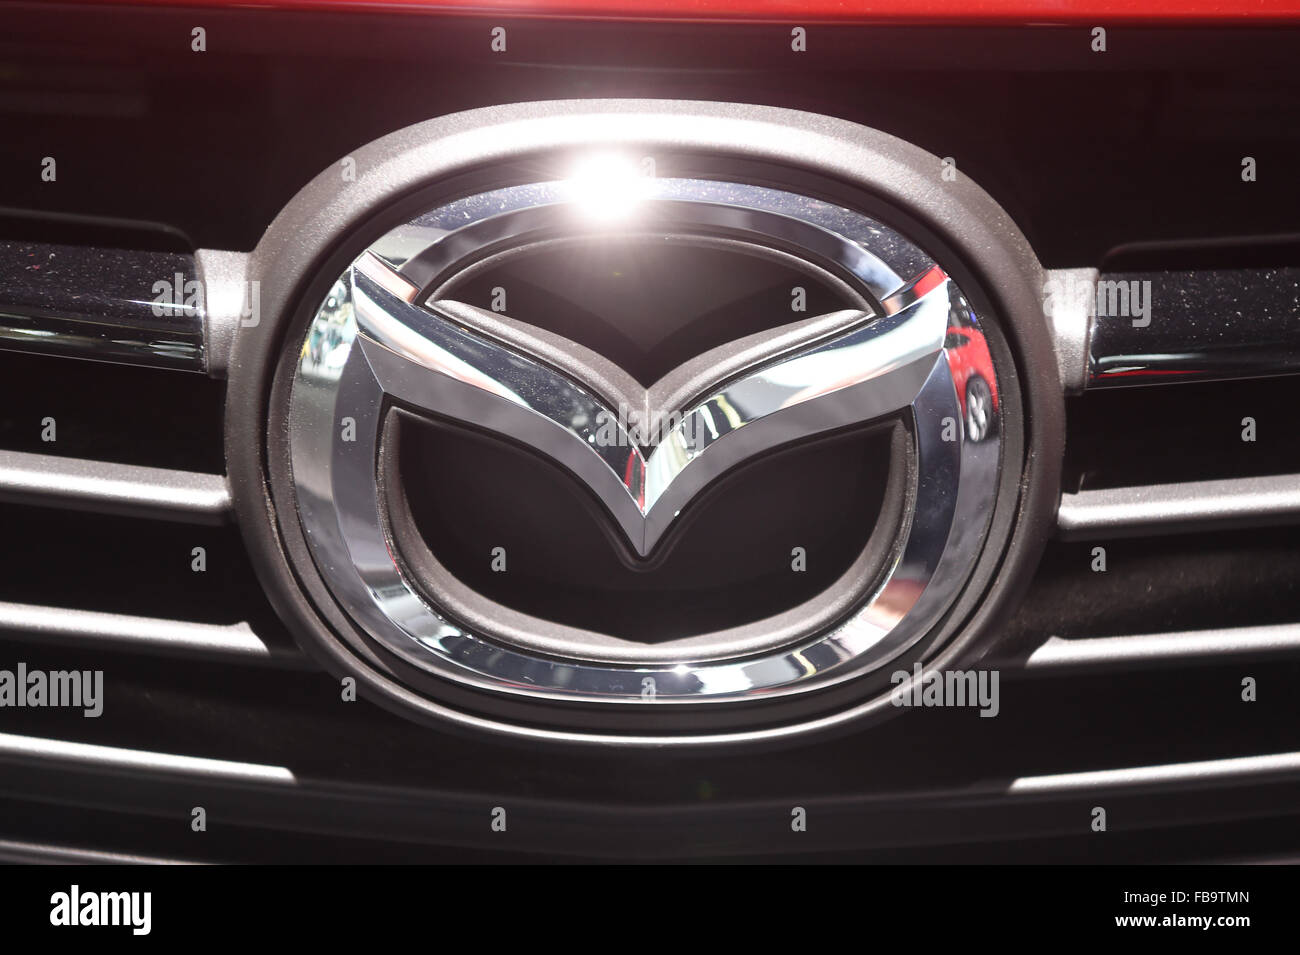 Detroit, Michigan, USA. 12 Jan, 2015. Un logo Mazda vu au cours de la deuxième journée de la presse à la North American International Auto Show (NAIAS) à Detroit, Michigan, USA, 12 janvier 2015. Photo : ULI DECK/dpa/Alamy Live News Banque D'Images